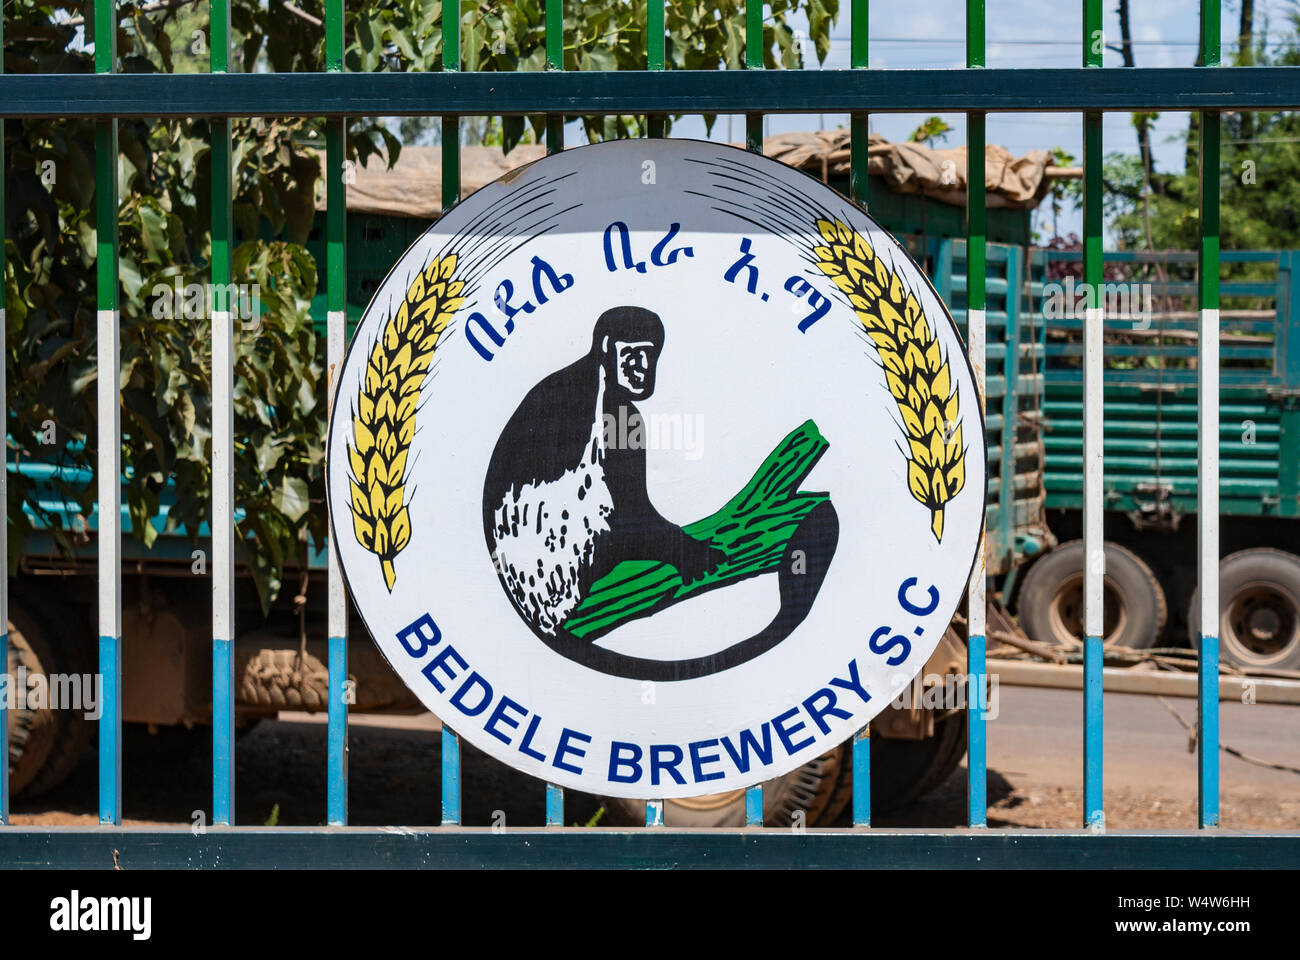 Bière Bedele signe sur les rails près de l'entrée de la brasserie Bedele, Ethiopie Banque D'Images